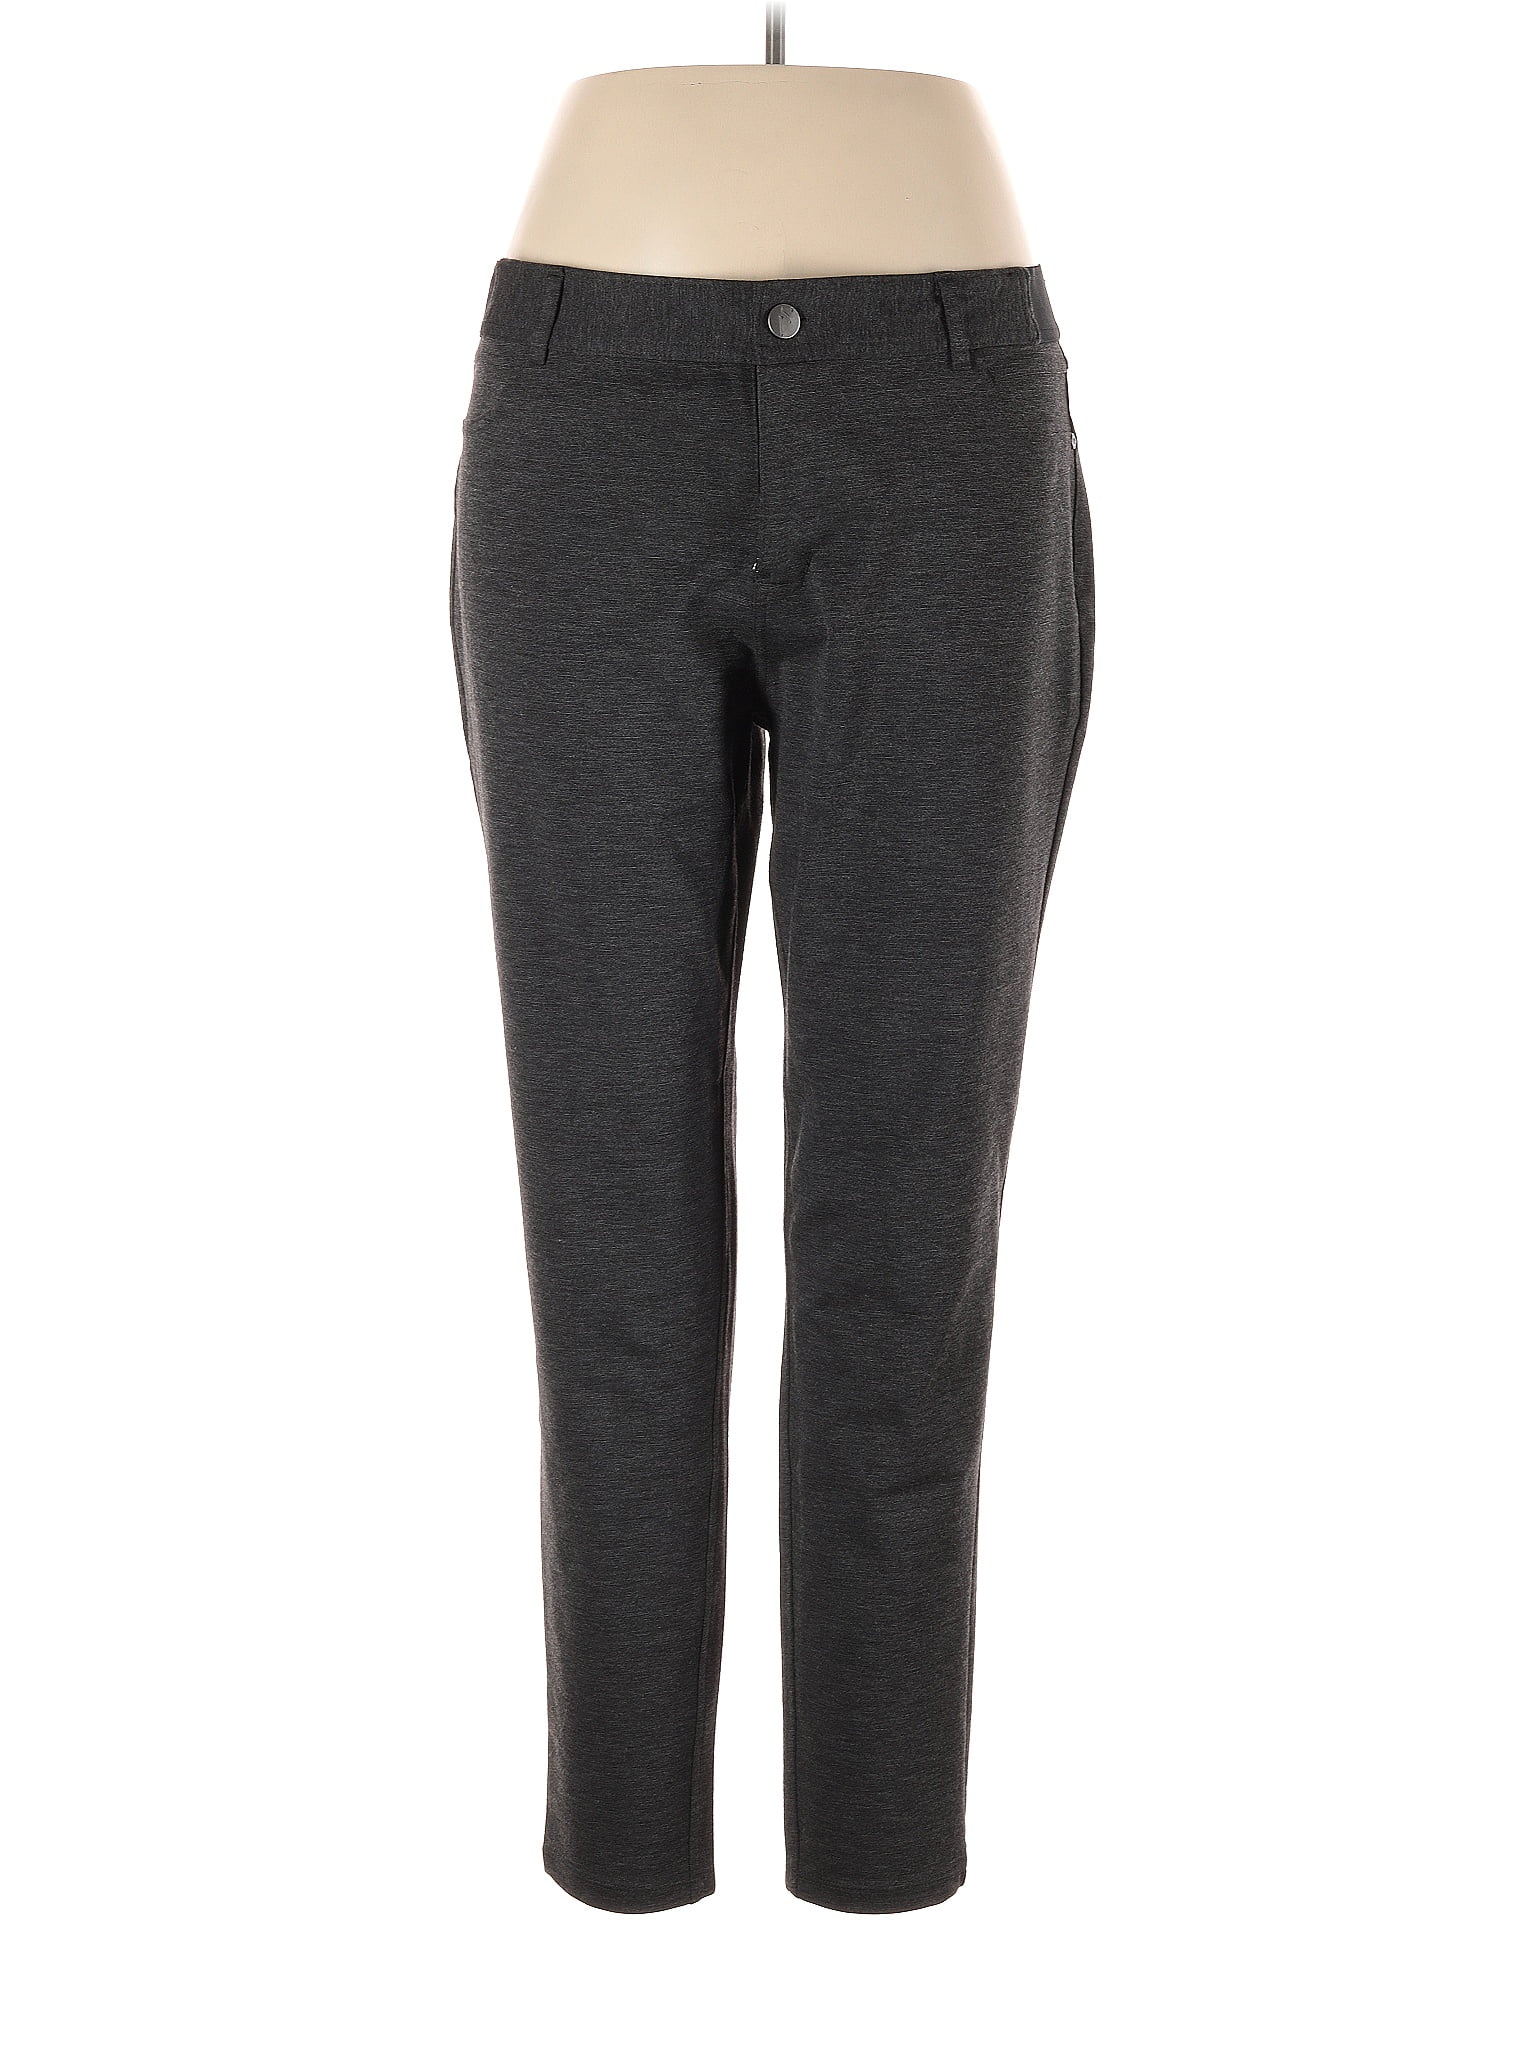 Simply Vera Vera Wang Black Gray Casual Pants Size XL - 53% off | thredUP